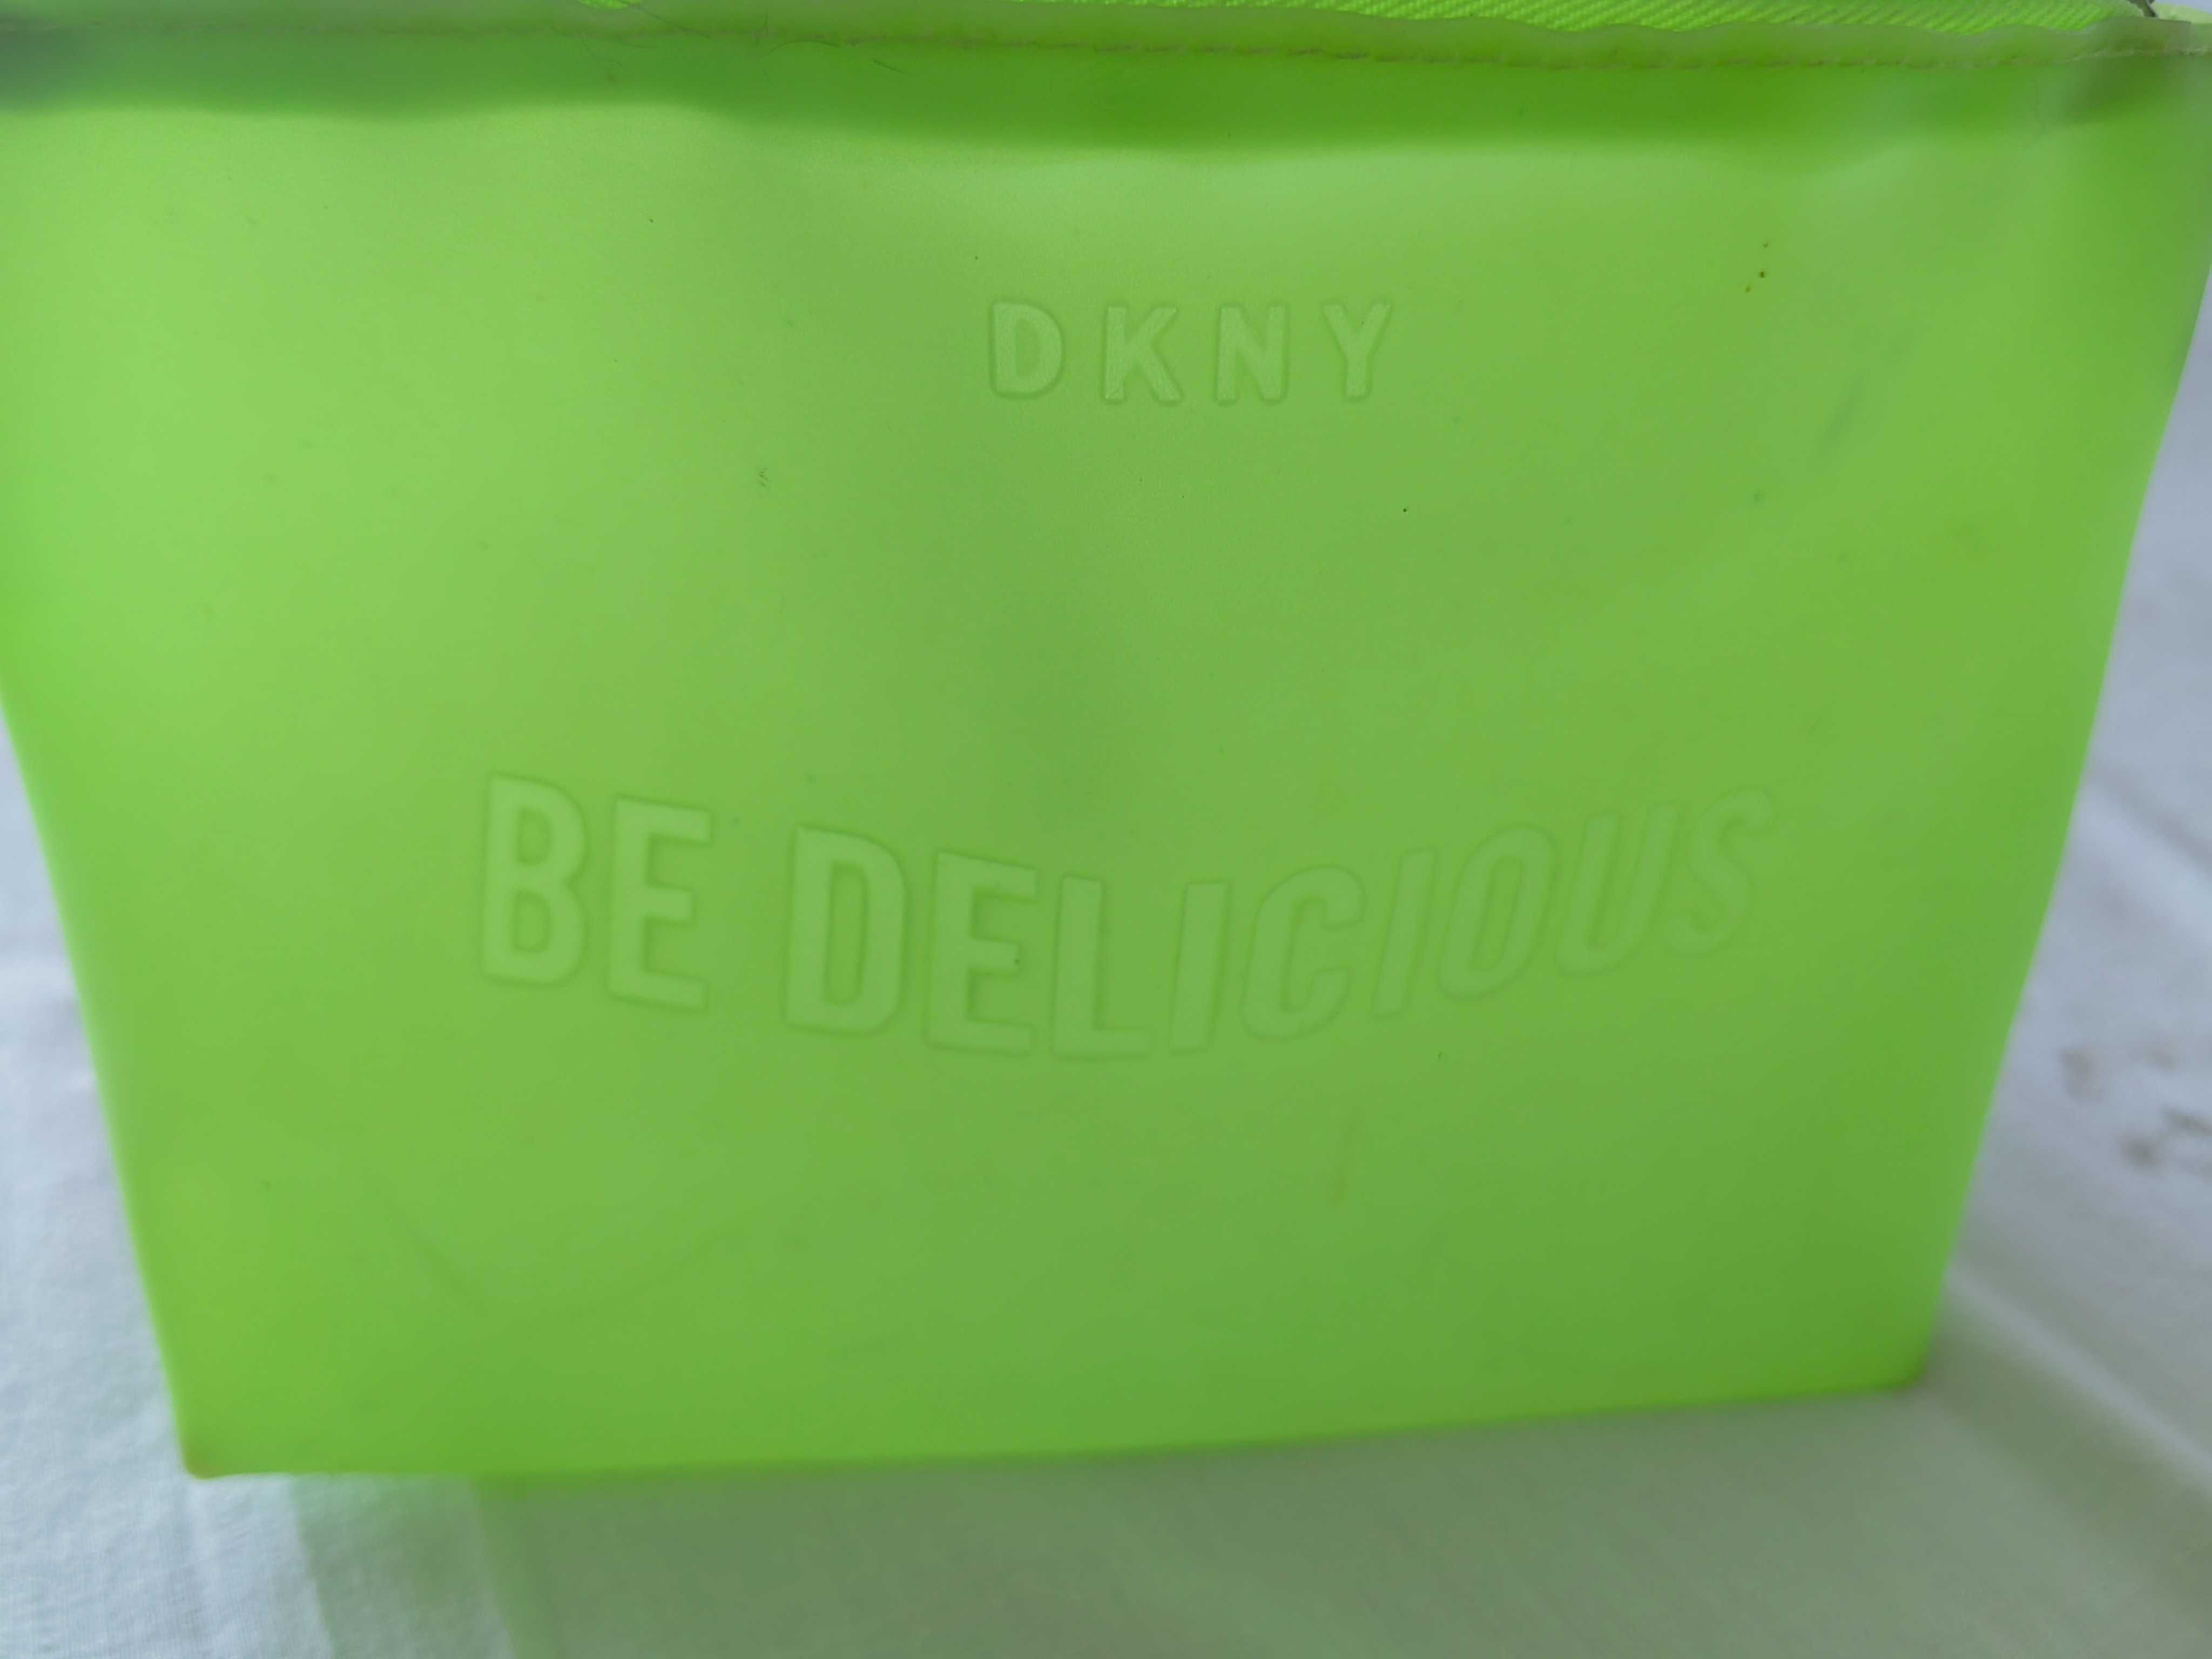 Mala da DKNY nova